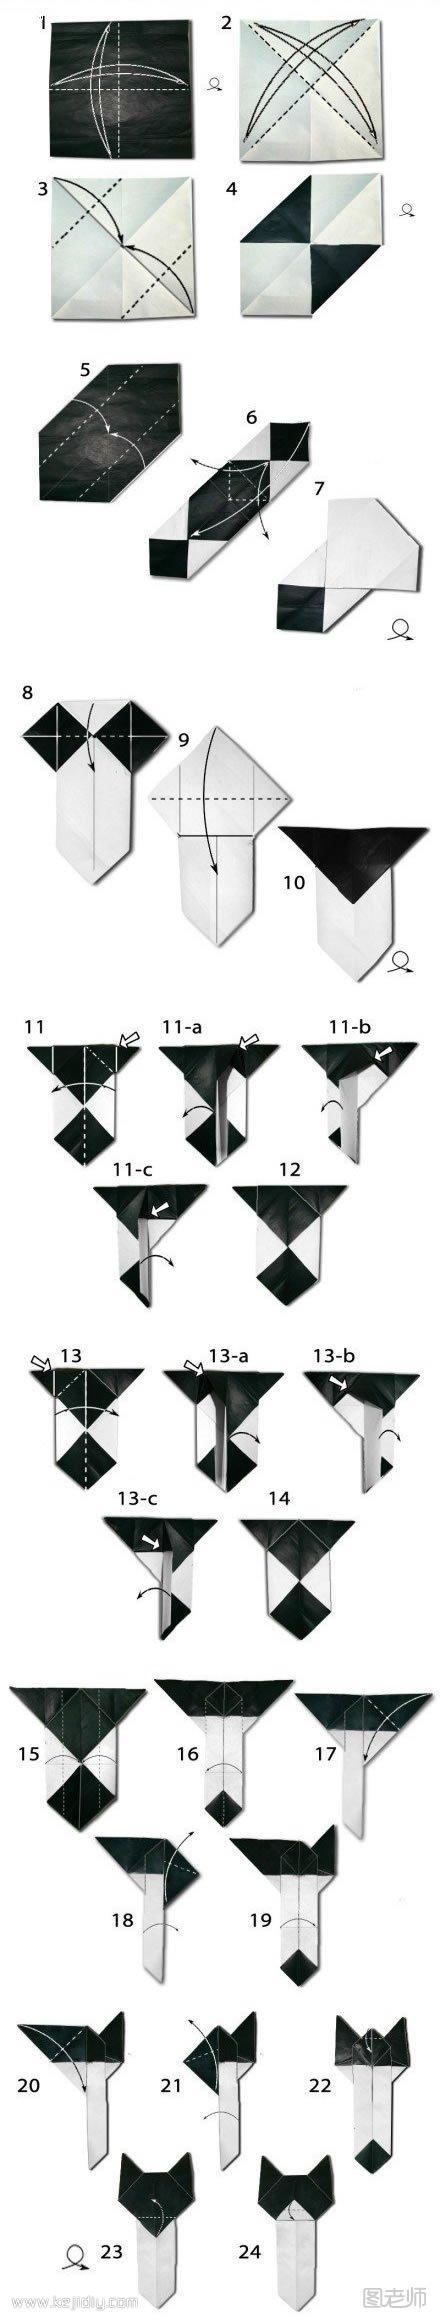 折纸制作猫咪书签 可爱猫咪书签折法- www.kejidiy.com